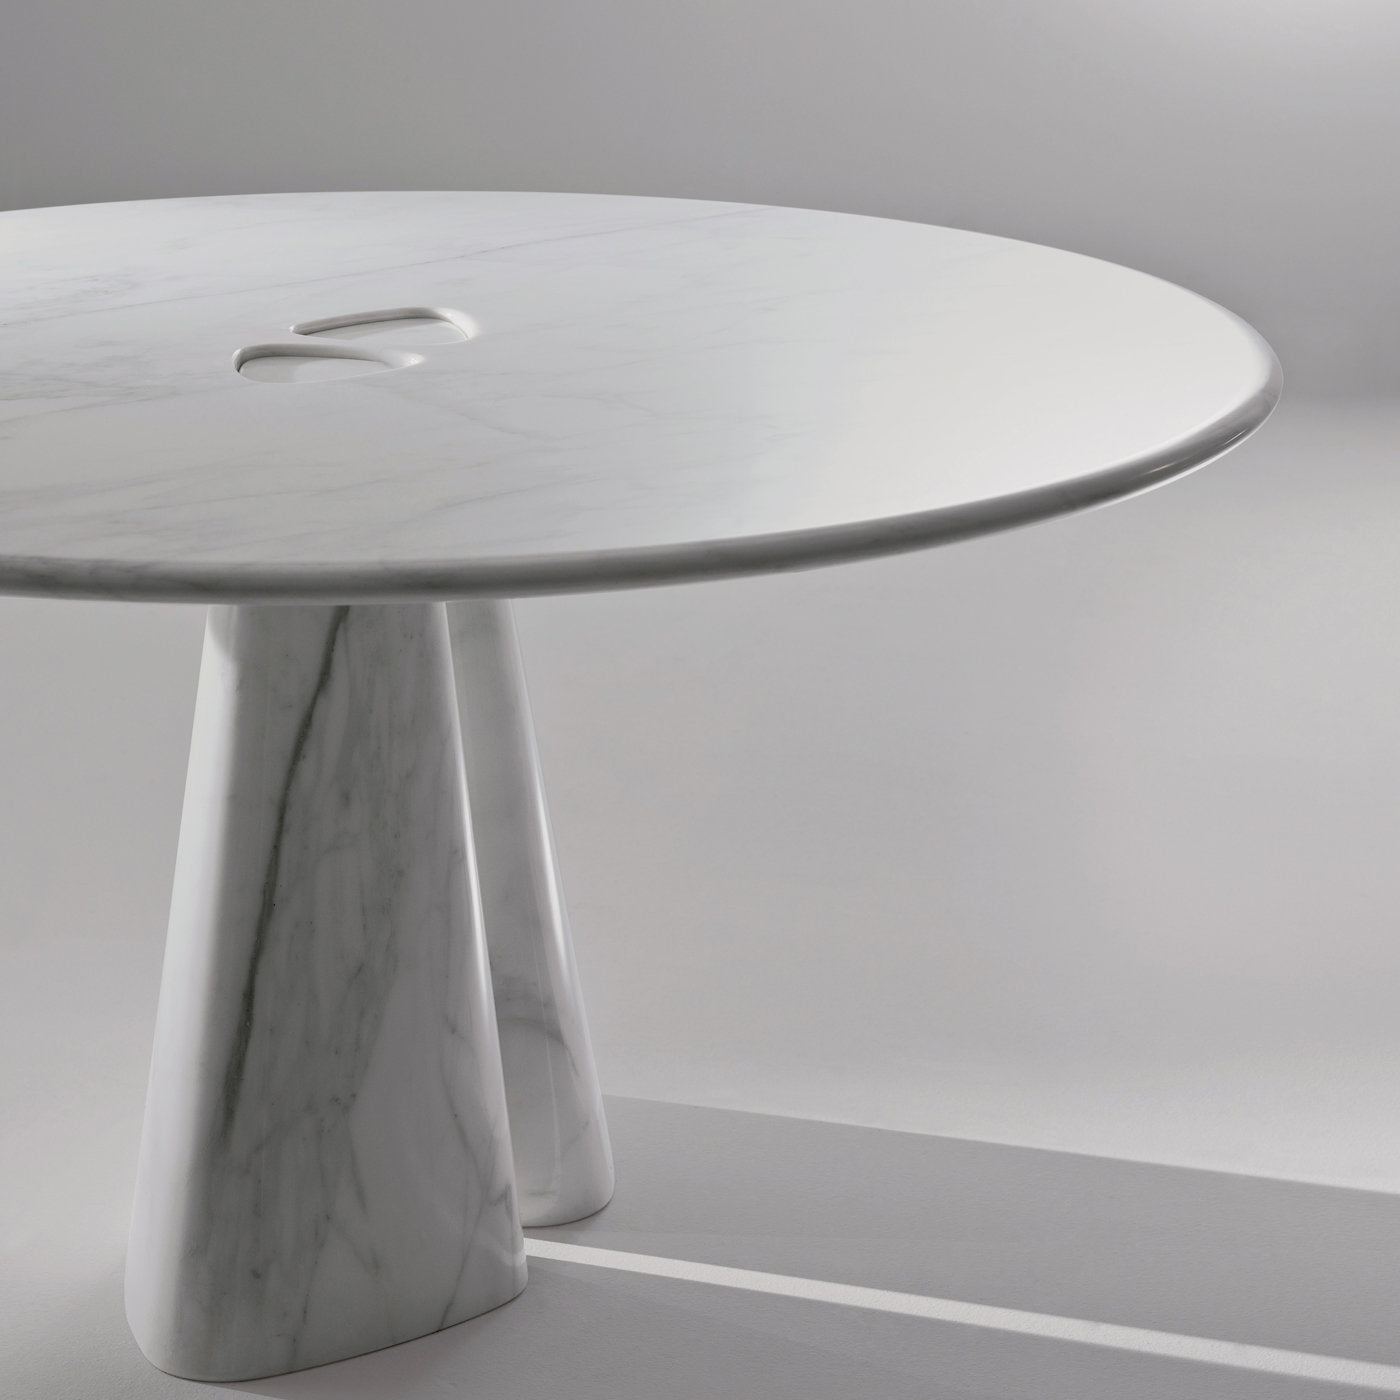 Raja Runder Tisch von Bartoli Design - Alternative Ansicht 2